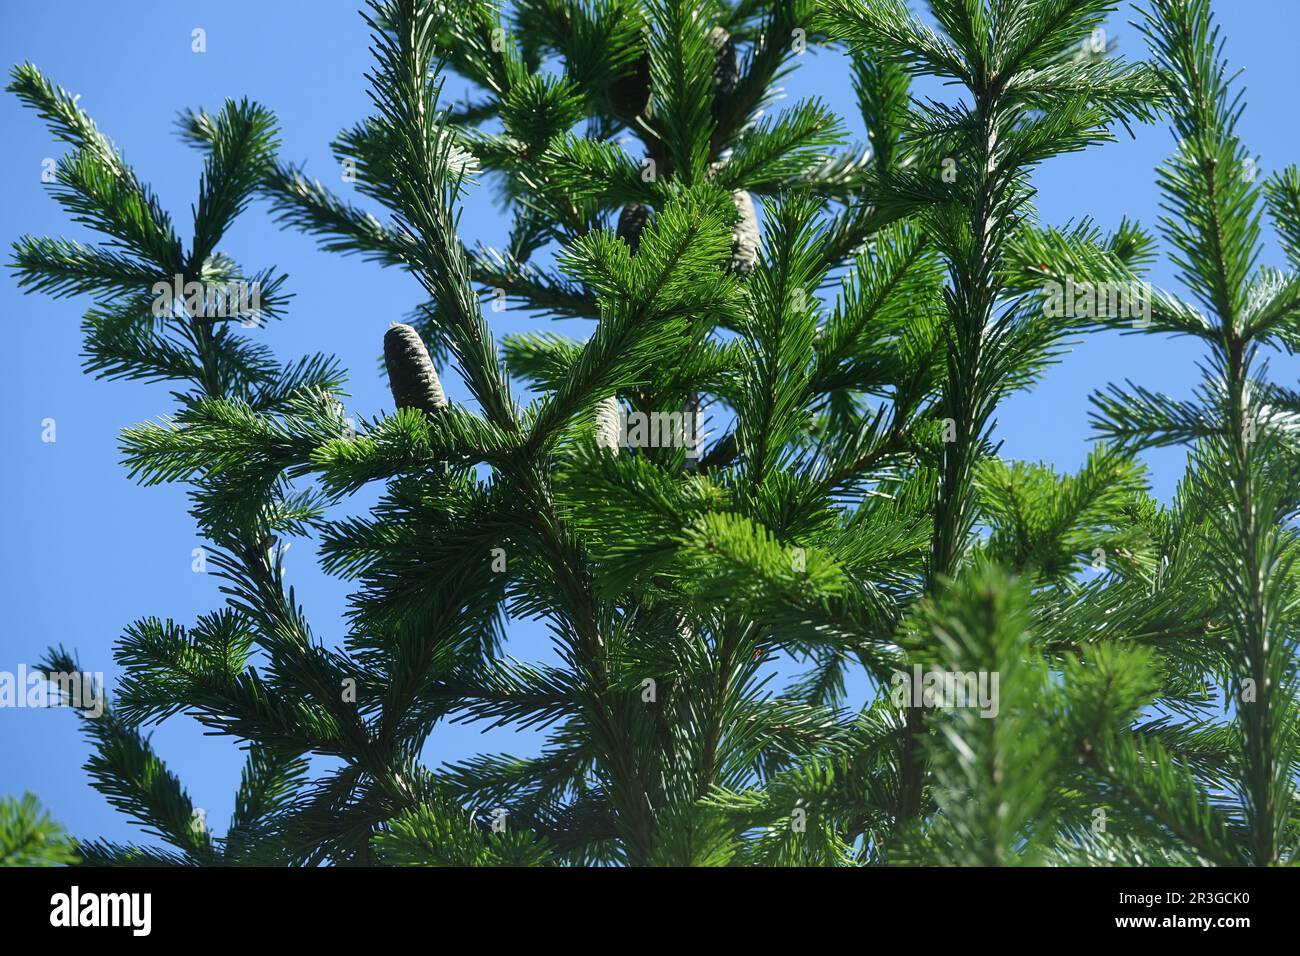 Abies sibirica, Siberian fir Stock Photo